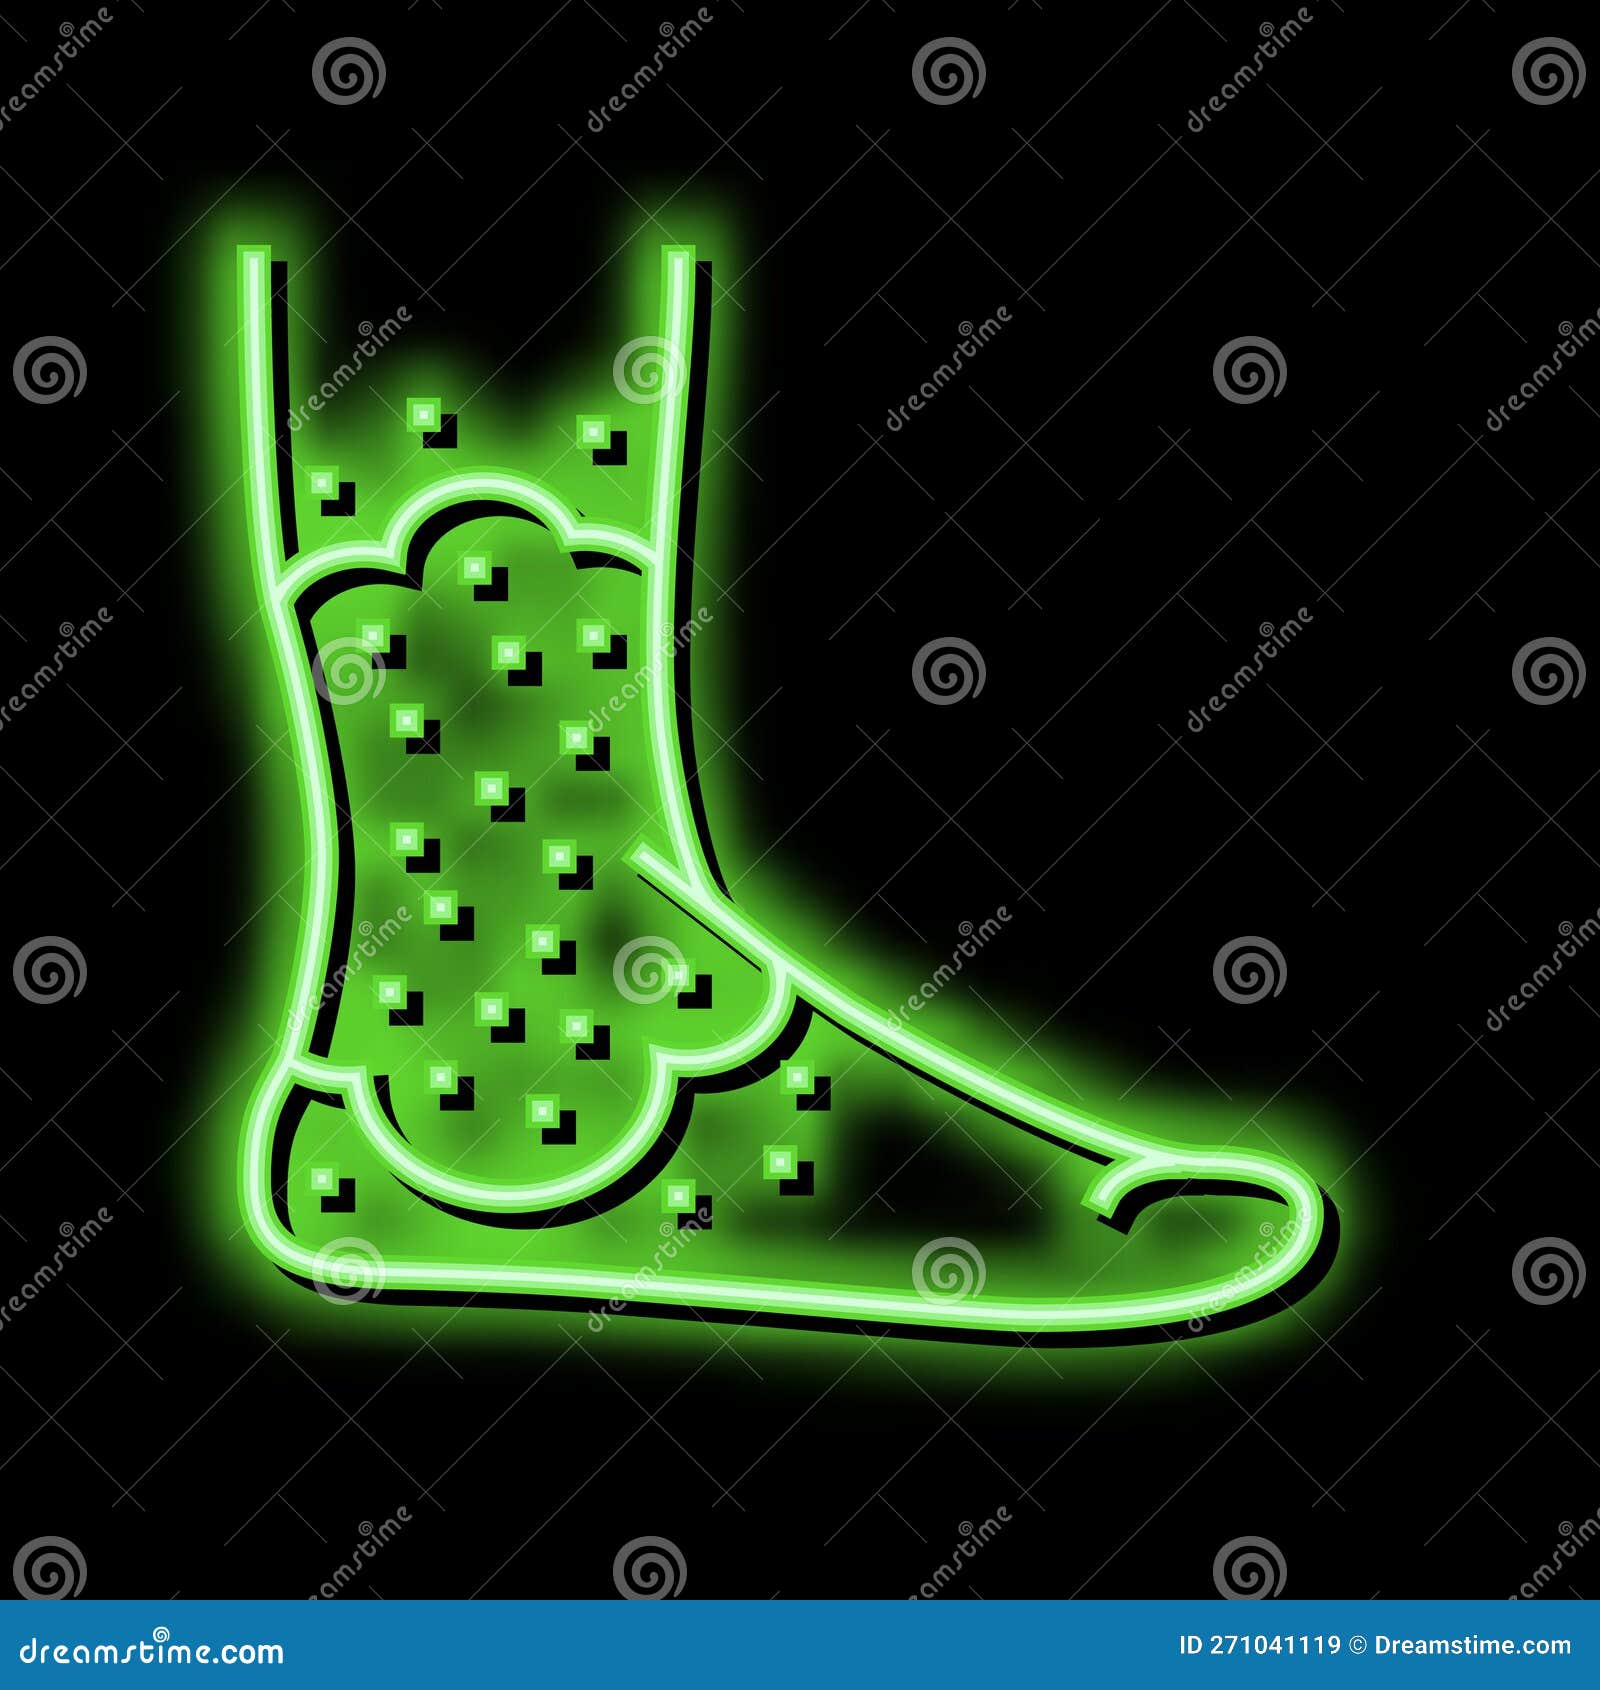 stasis dermatitis neon glow icon 